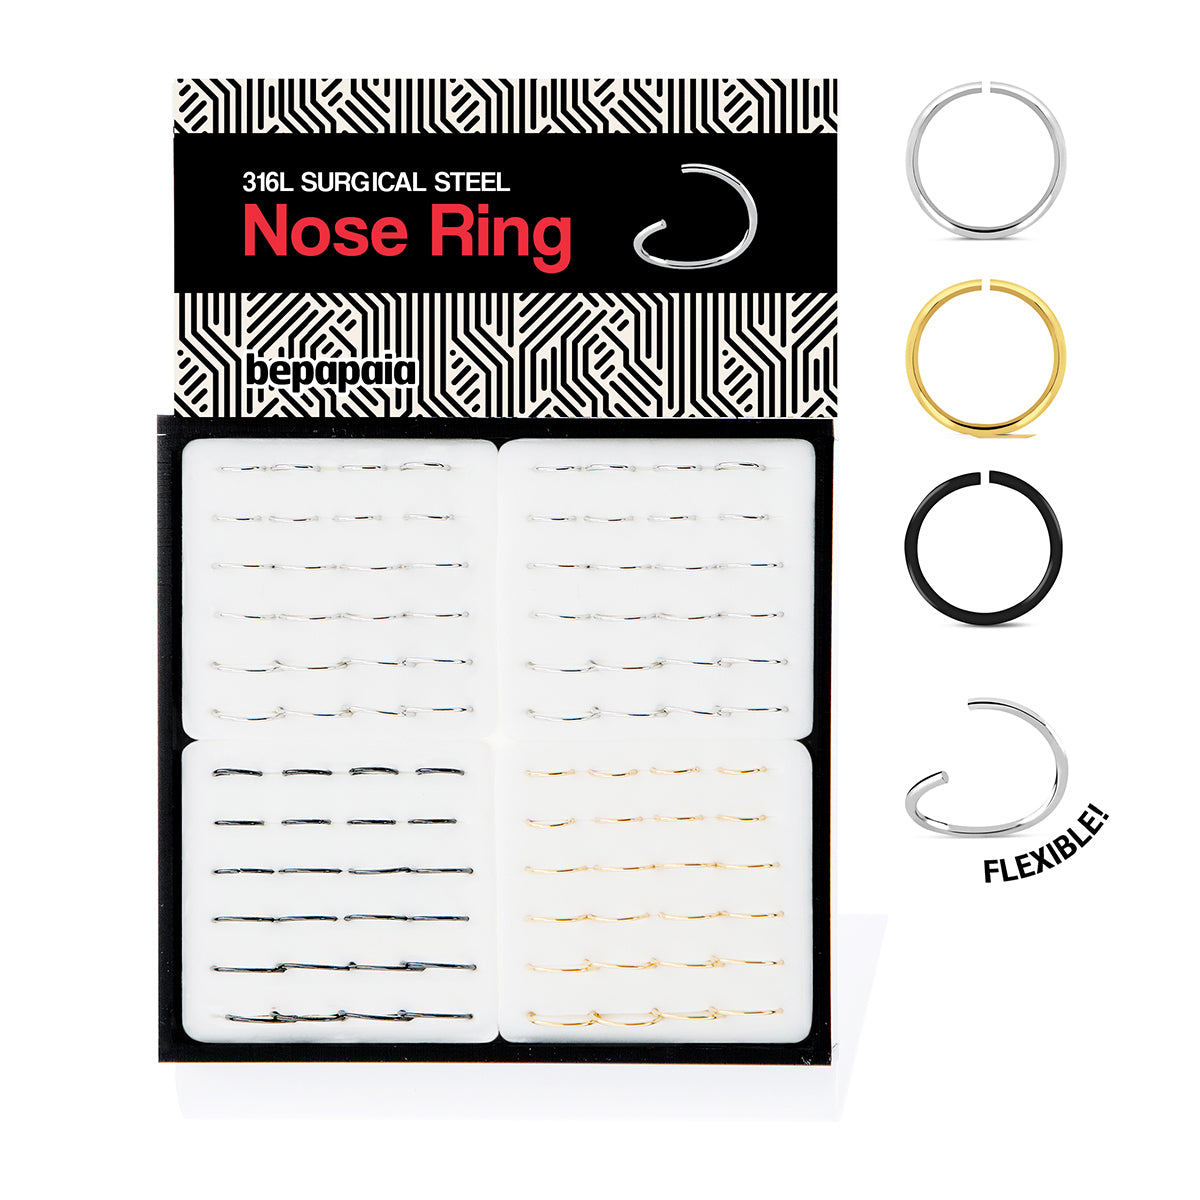 Aro flexible de nariz de acero en 3 colores. 0.8x6,8,10mm